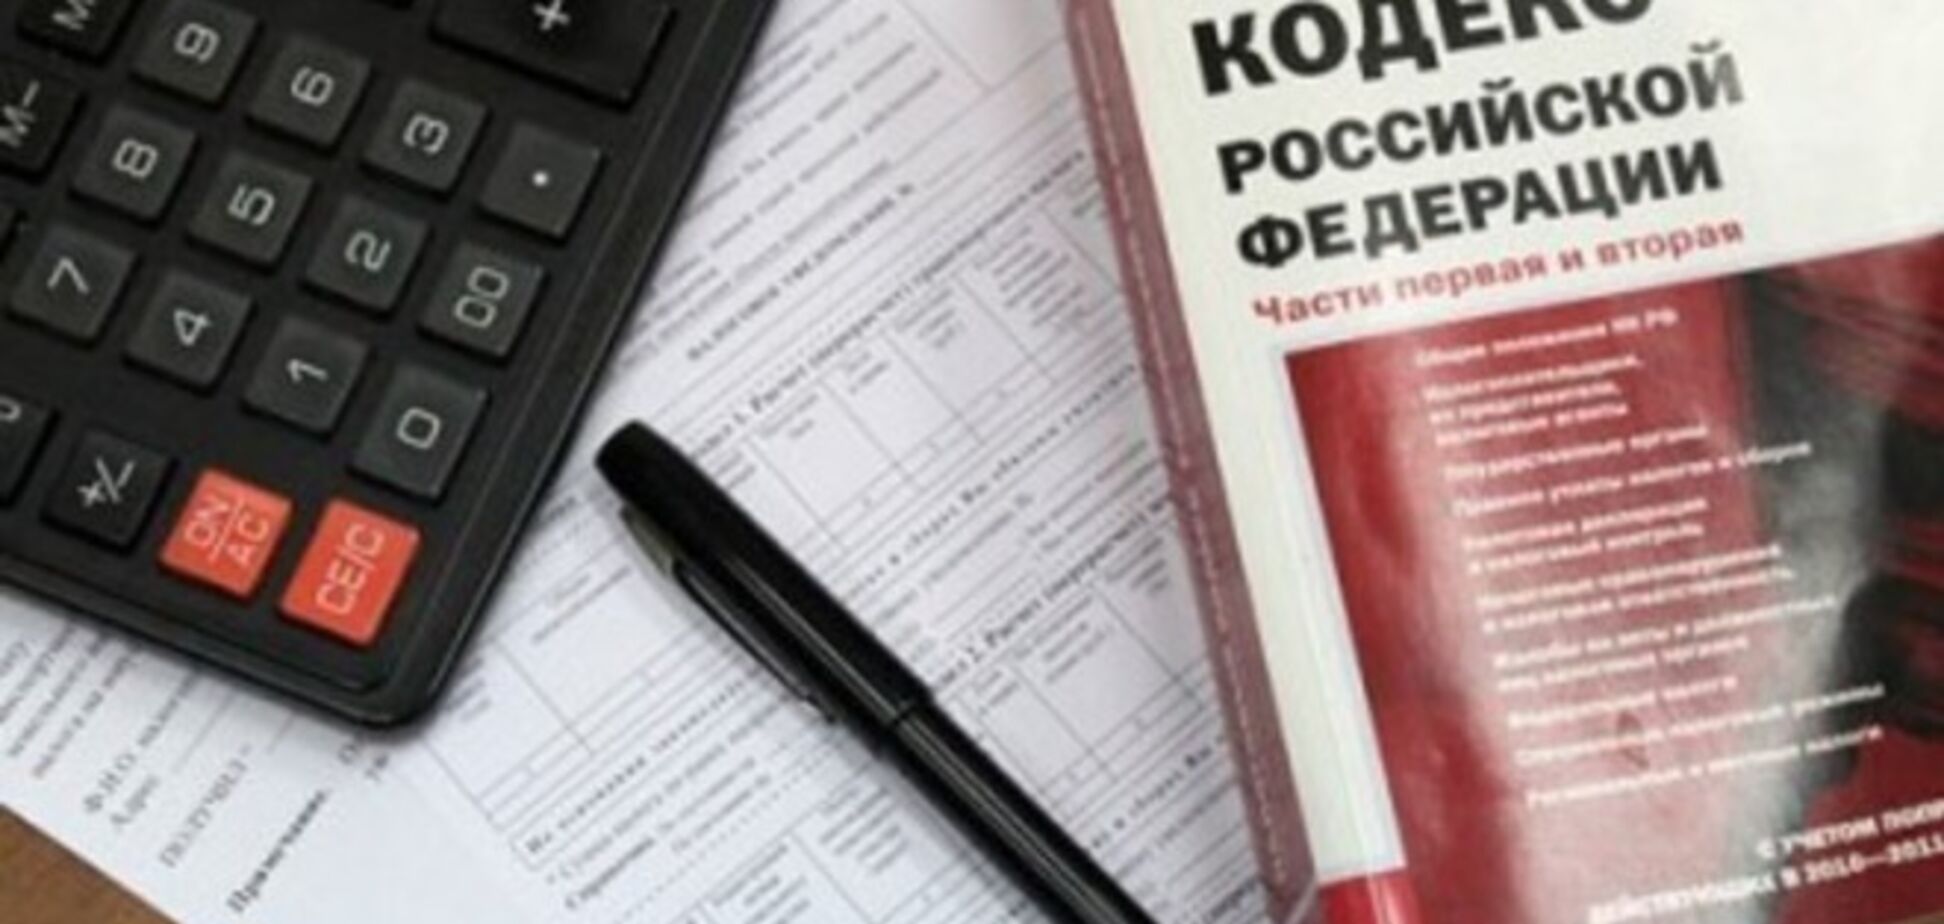 Зато Крымнаш: налоги для крымских предпринимателей стали в 4 раза выше, чем при Украине